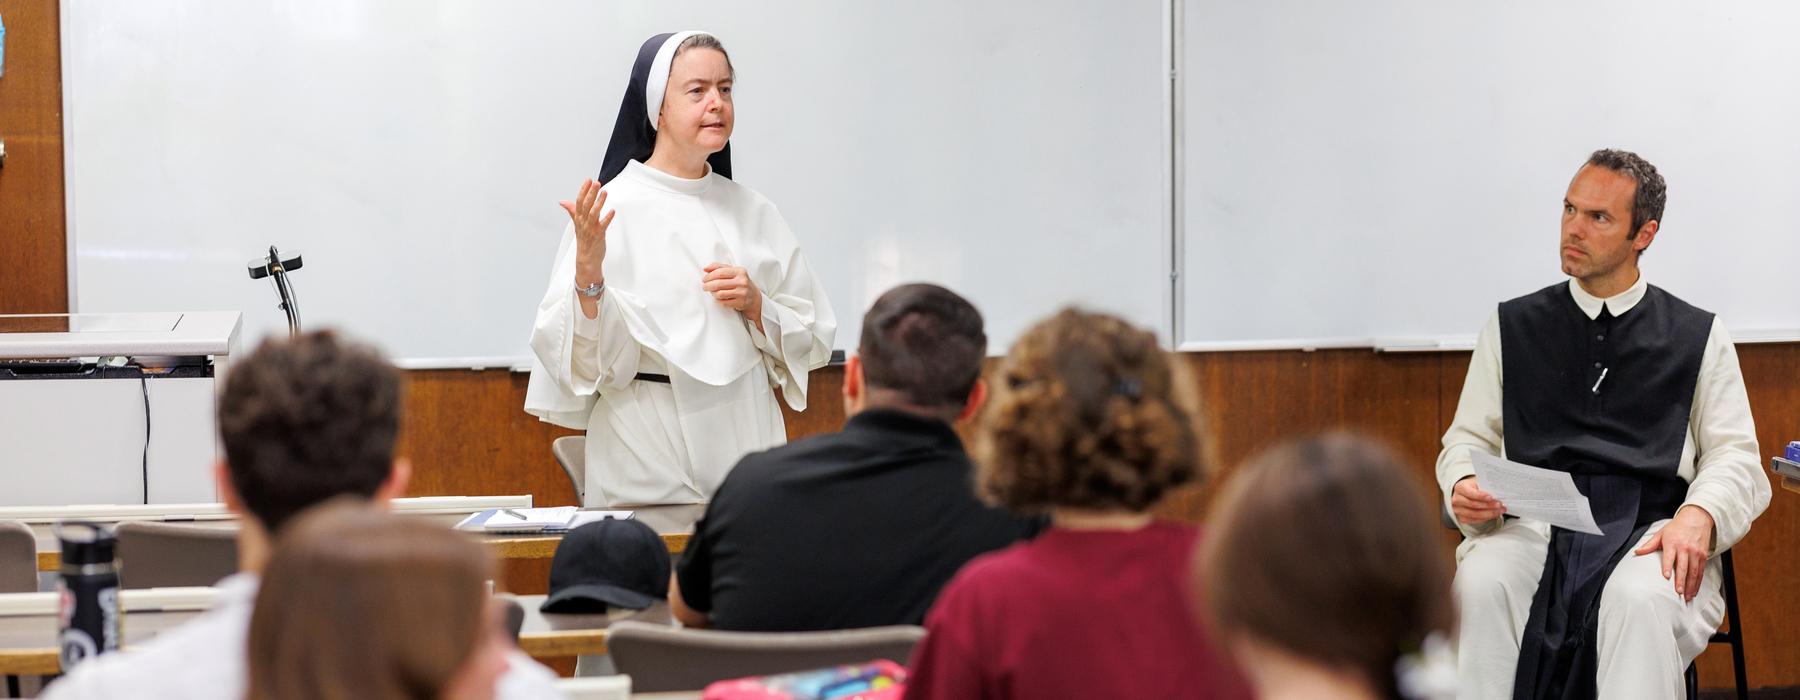 Nun teaching class